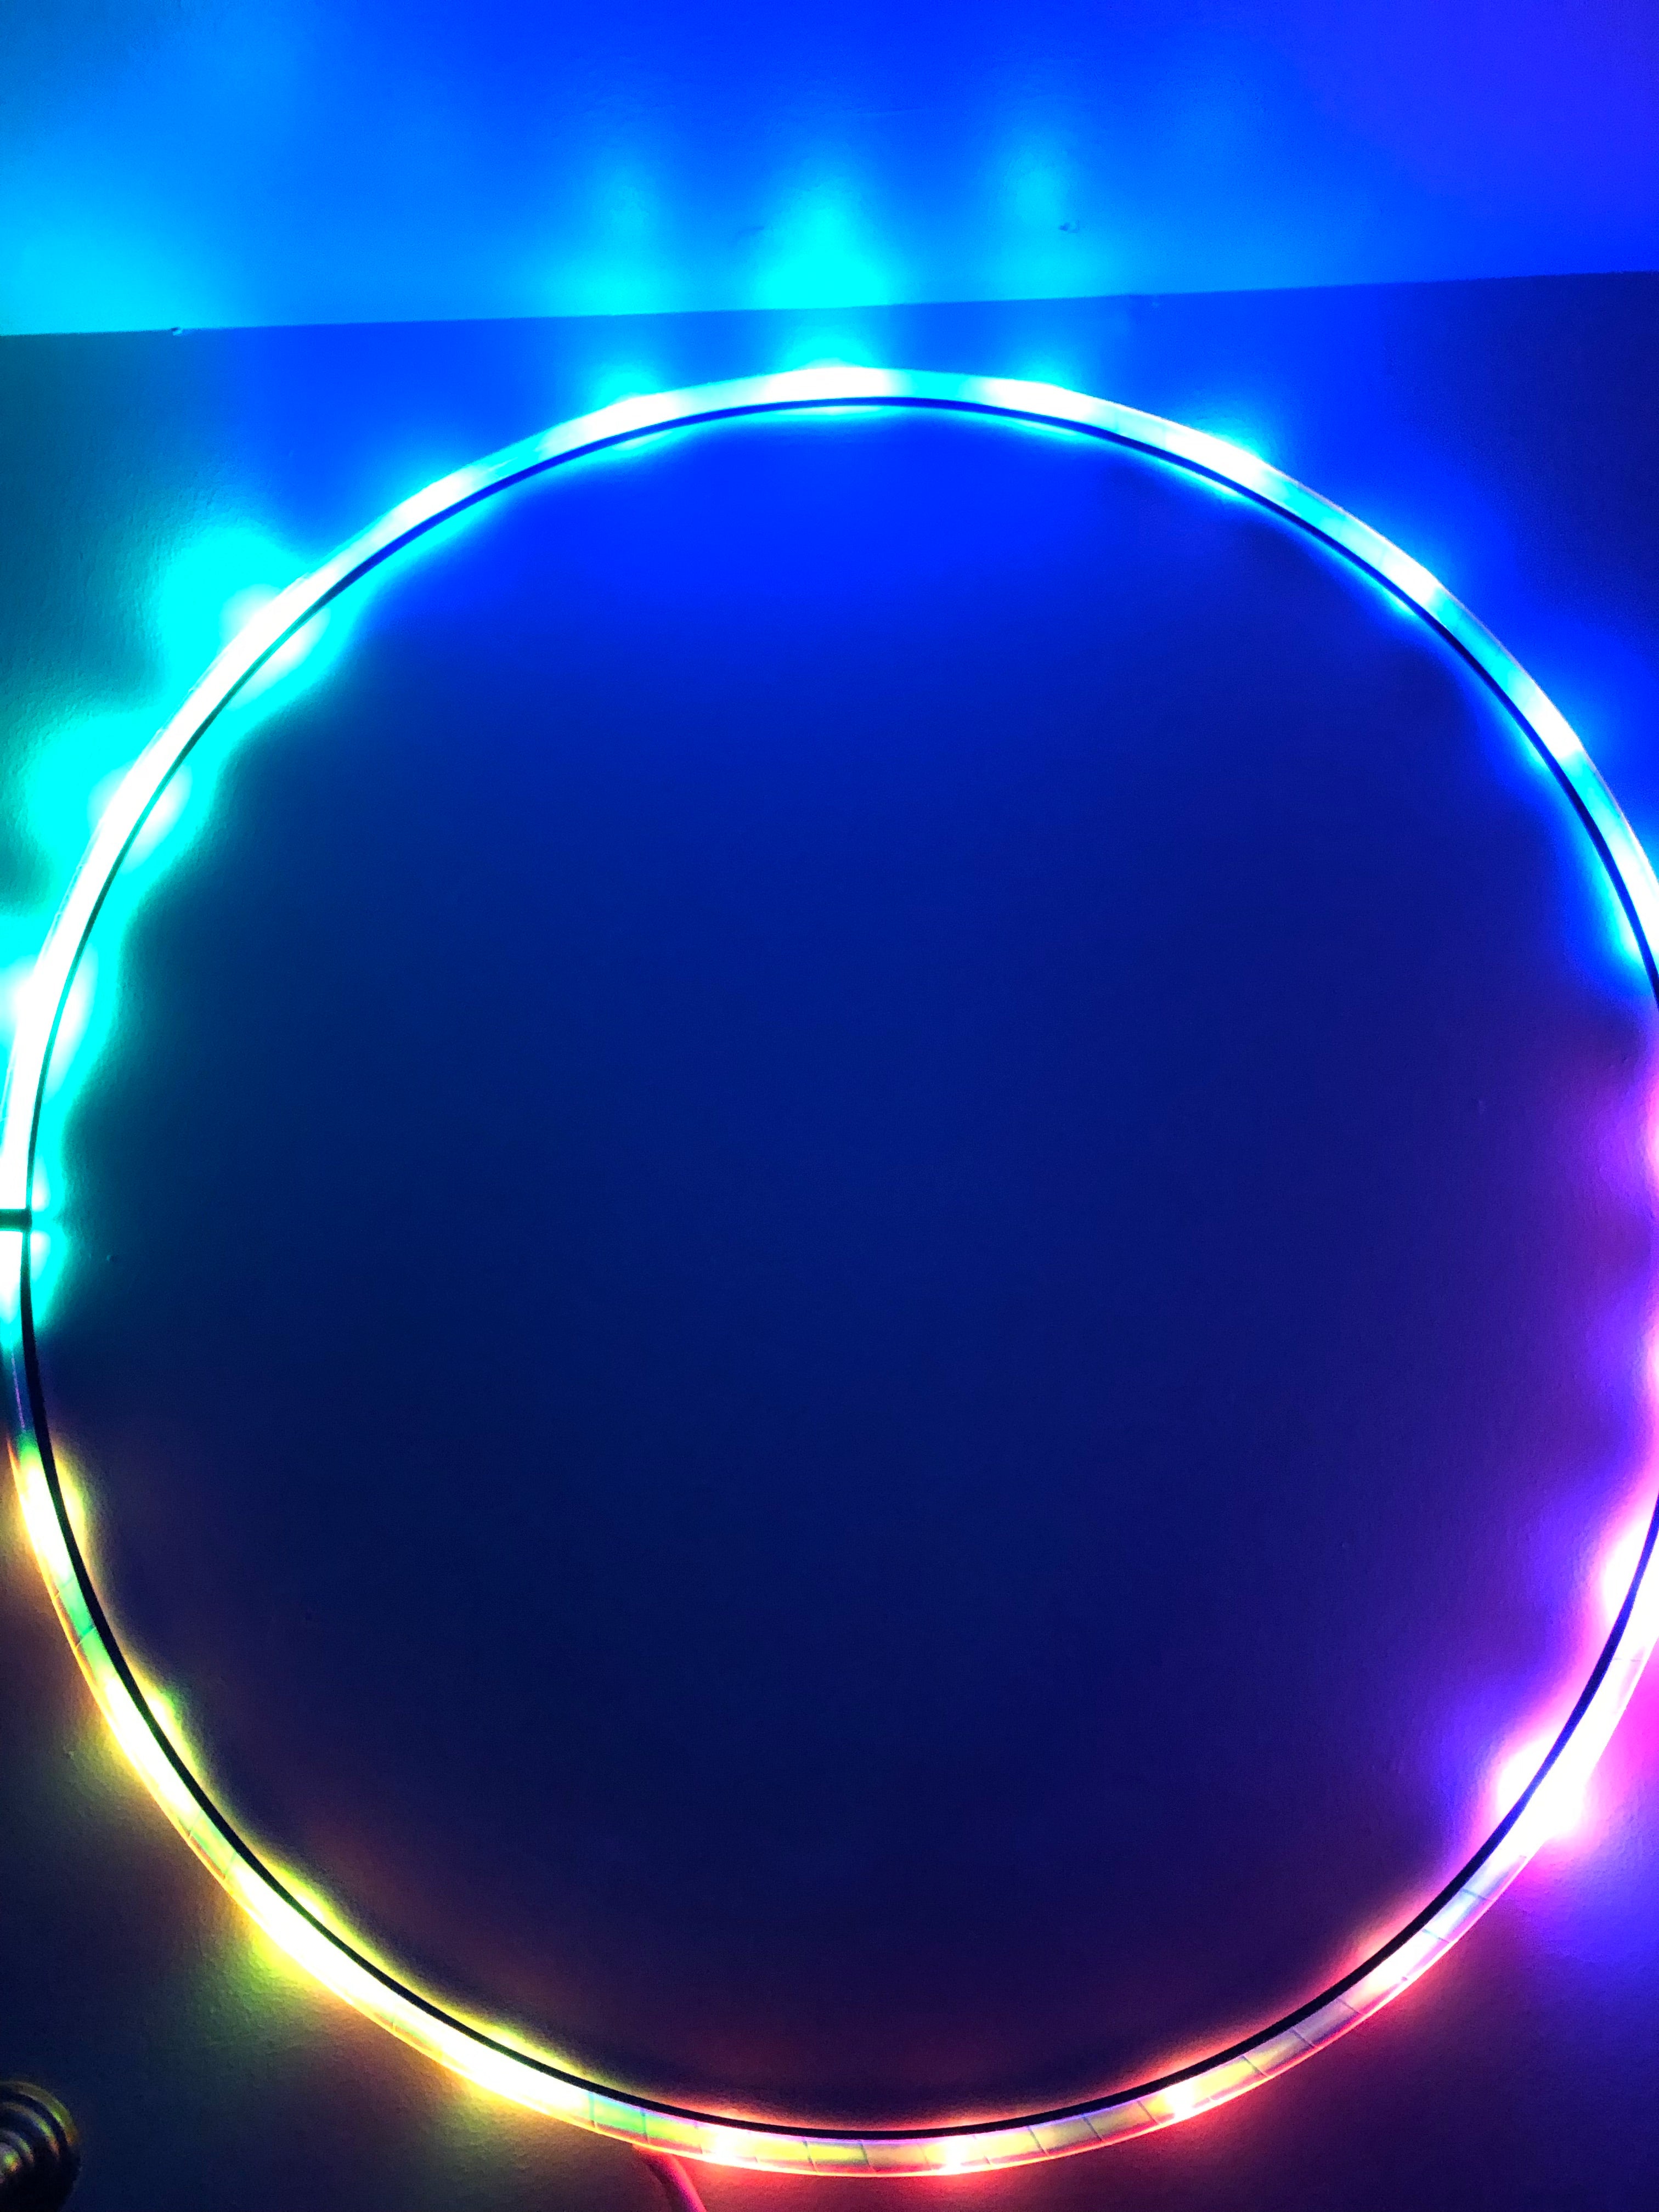 Skittlez Elite Taped LED Hula Hoop